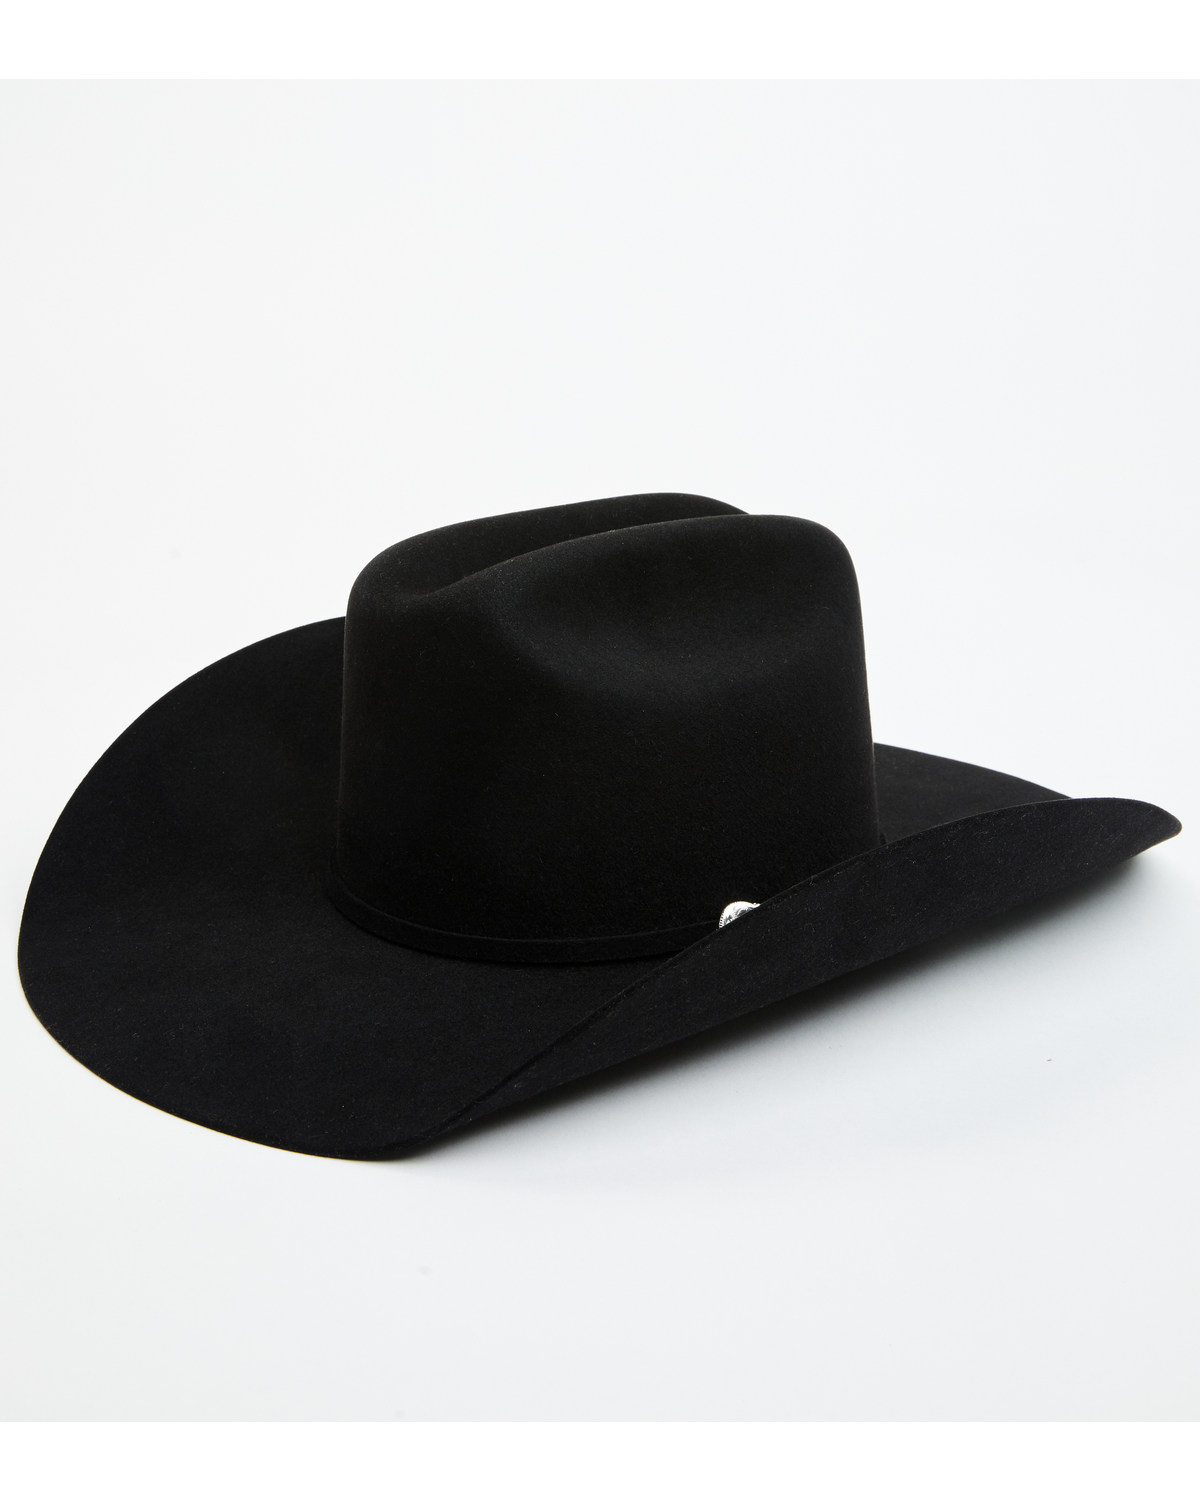 Cody James Black 1978® San Francisco 100X Felt Cowboy Hat